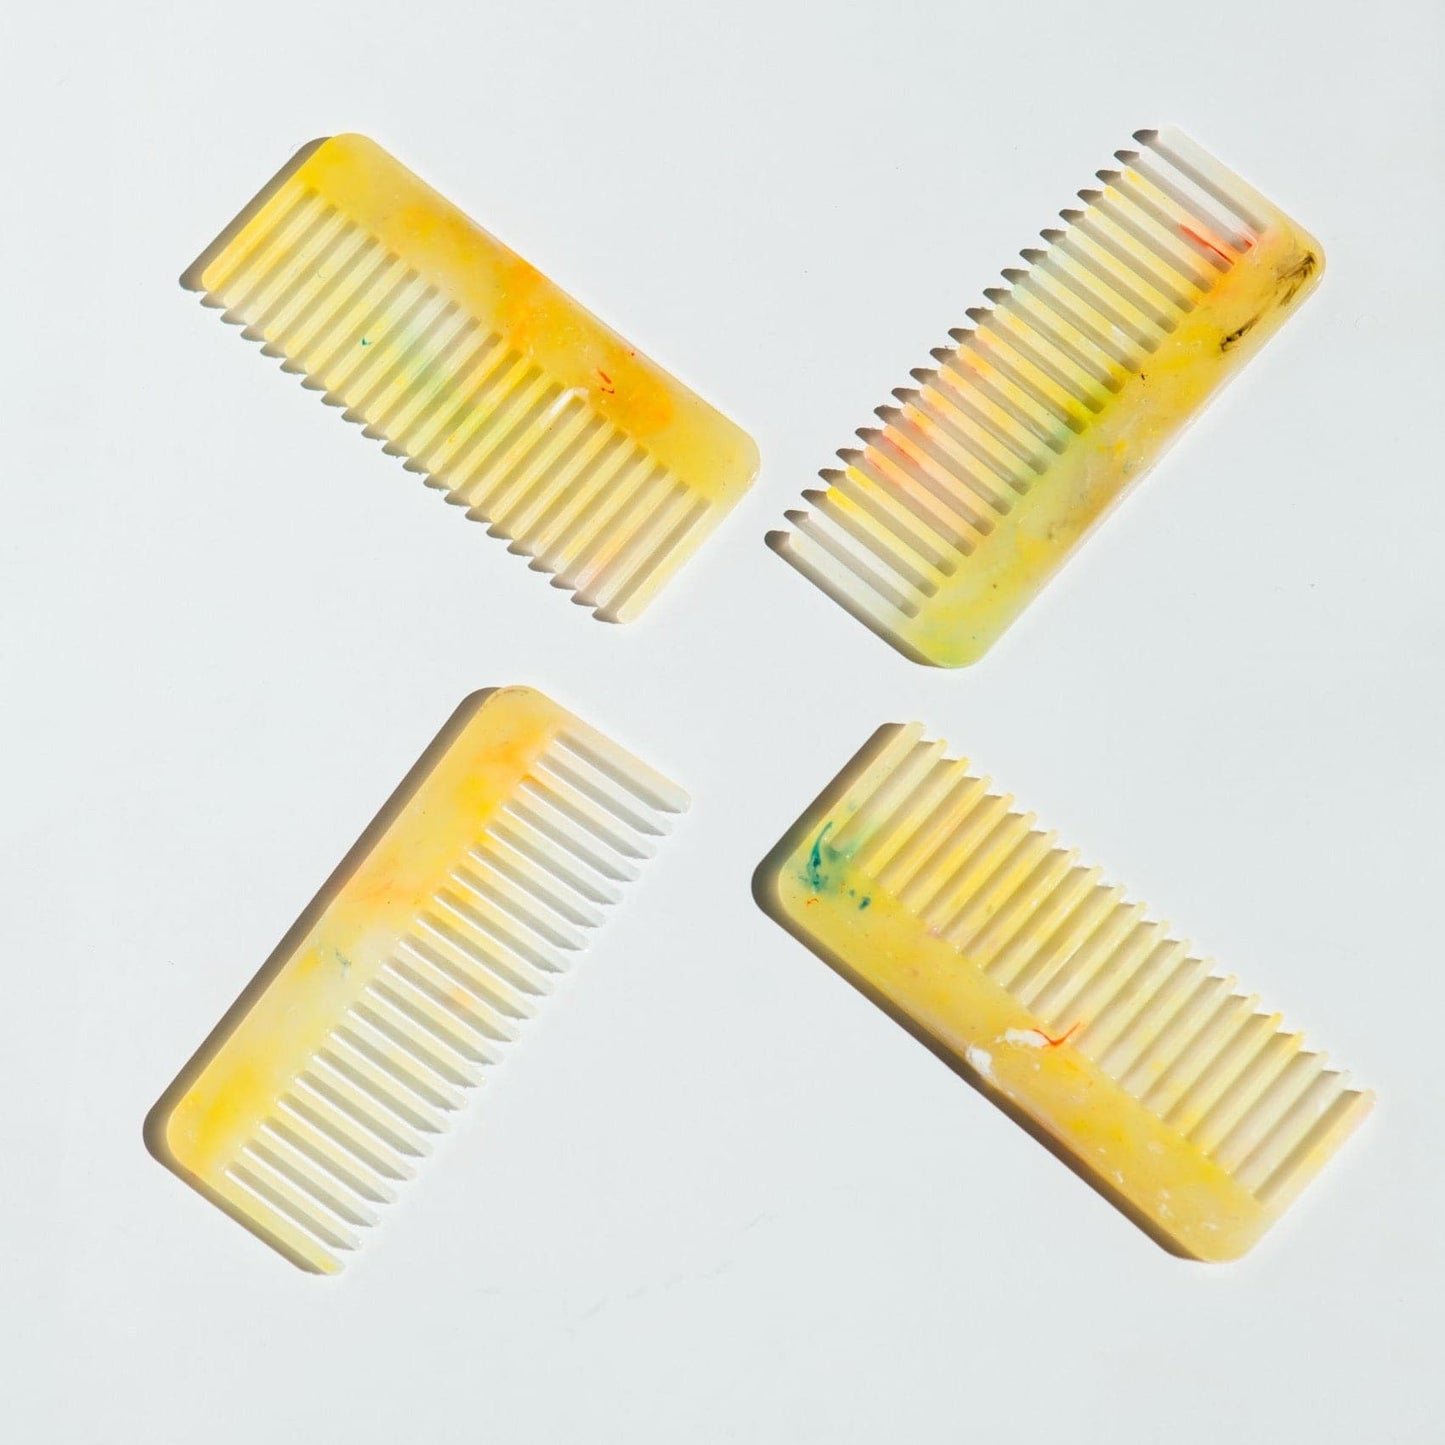 Mar-Mite Comb